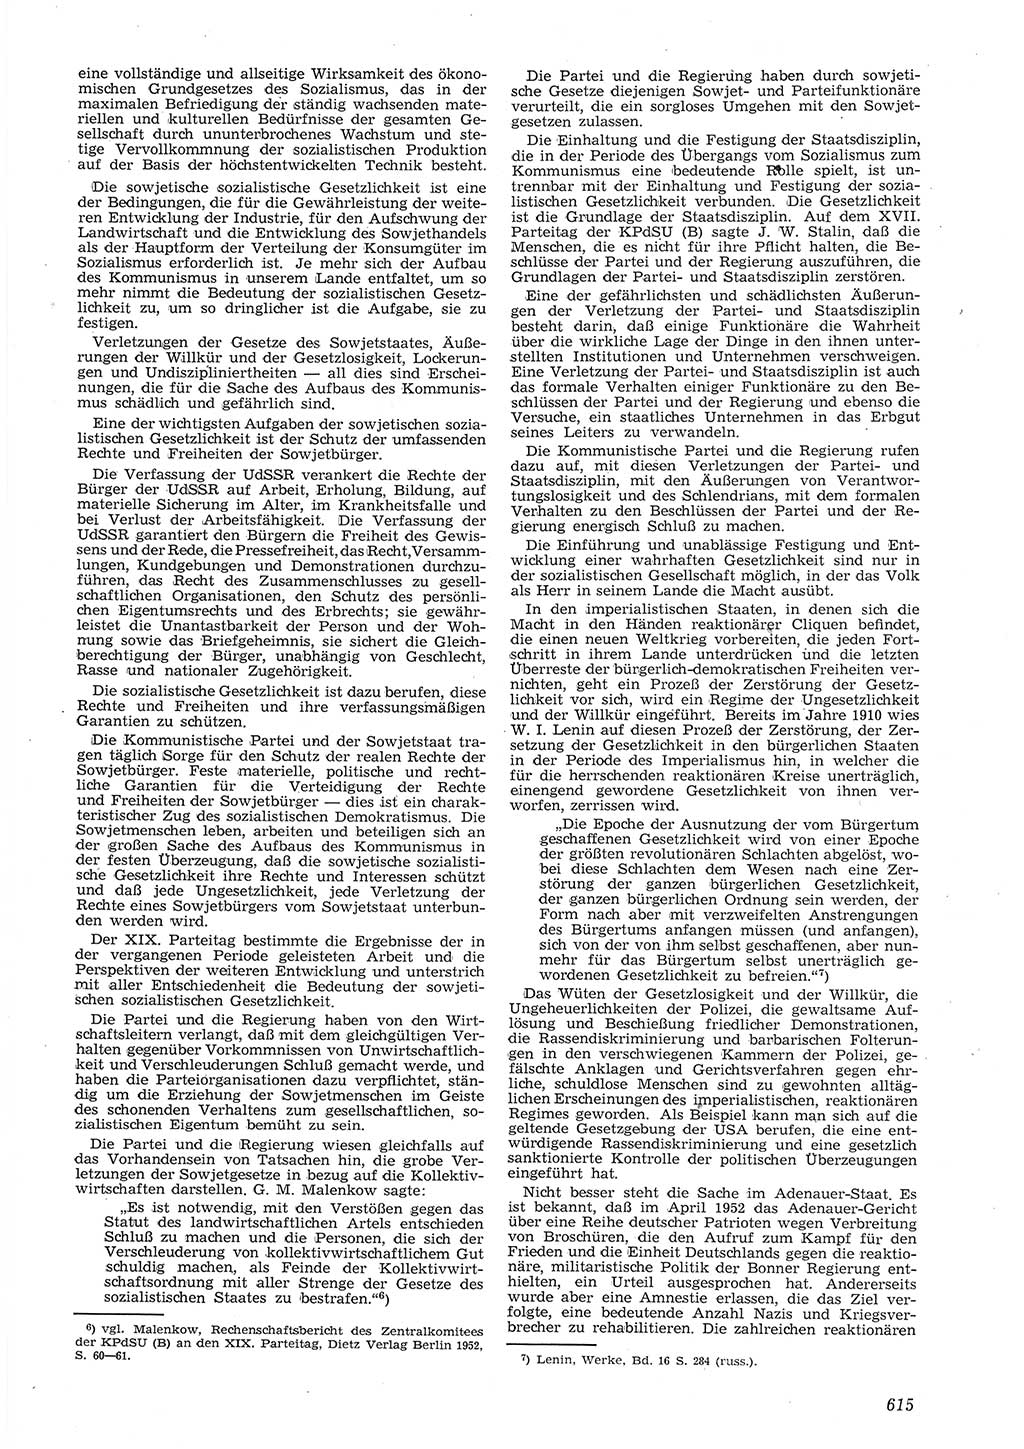 Neue Justiz (NJ), Zeitschrift für Recht und Rechtswissenschaft [Deutsche Demokratische Republik (DDR)], 8. Jahrgang 1954, Seite 615 (NJ DDR 1954, S. 615)